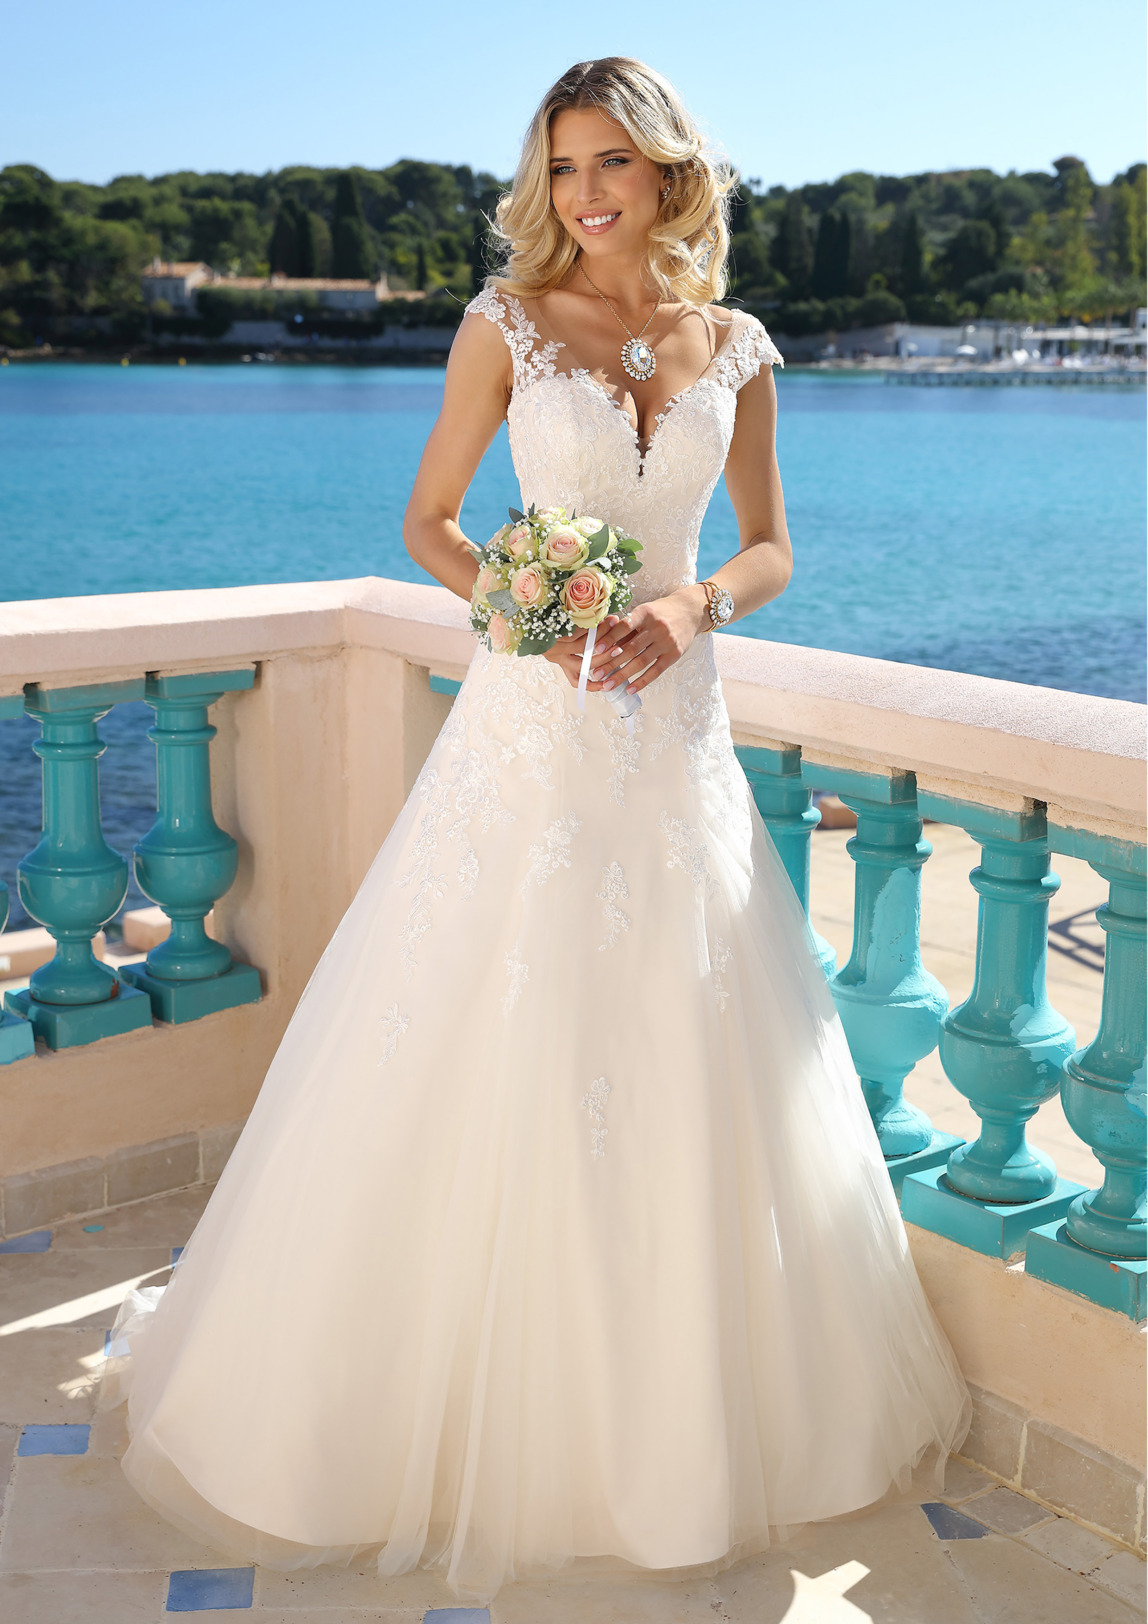 Hochzeitskleider Brautkleider im Fit and Flare Stil von Ladybird Modell 422009. Dieses Kleid zaubert ein wunderschönes Dekolleté durch den überschnittenen Armansatz. Feinste Spitzenapplikationen all over zieren dieses Modell Bild 3